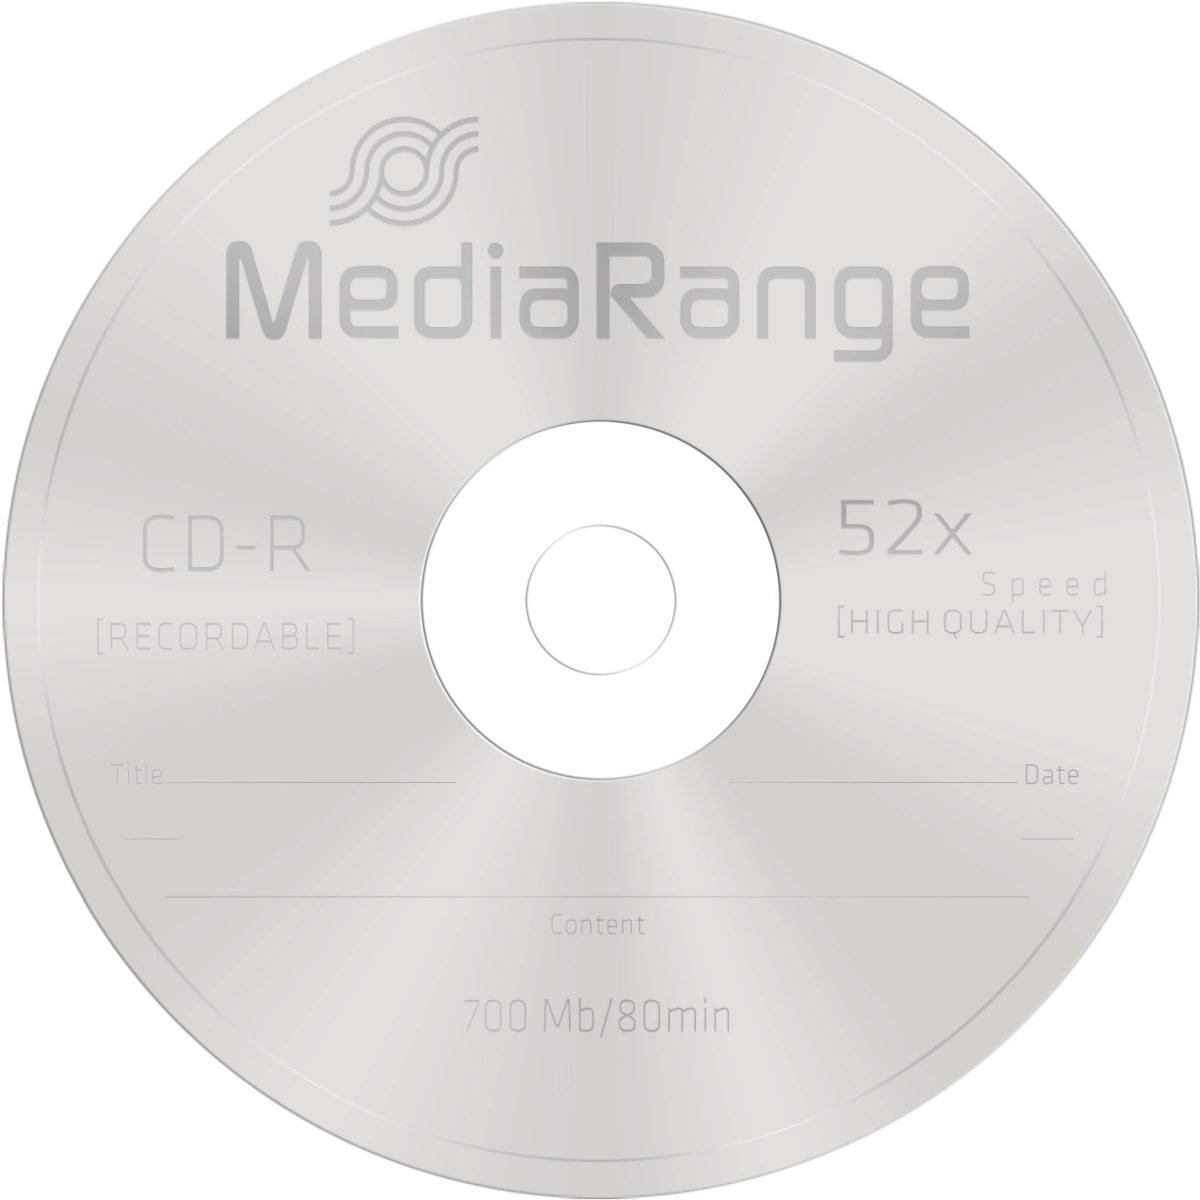 CD-R Rohlinge - 700MB/80Min, 52-fach/Spindel, Packung mit 50 Stück